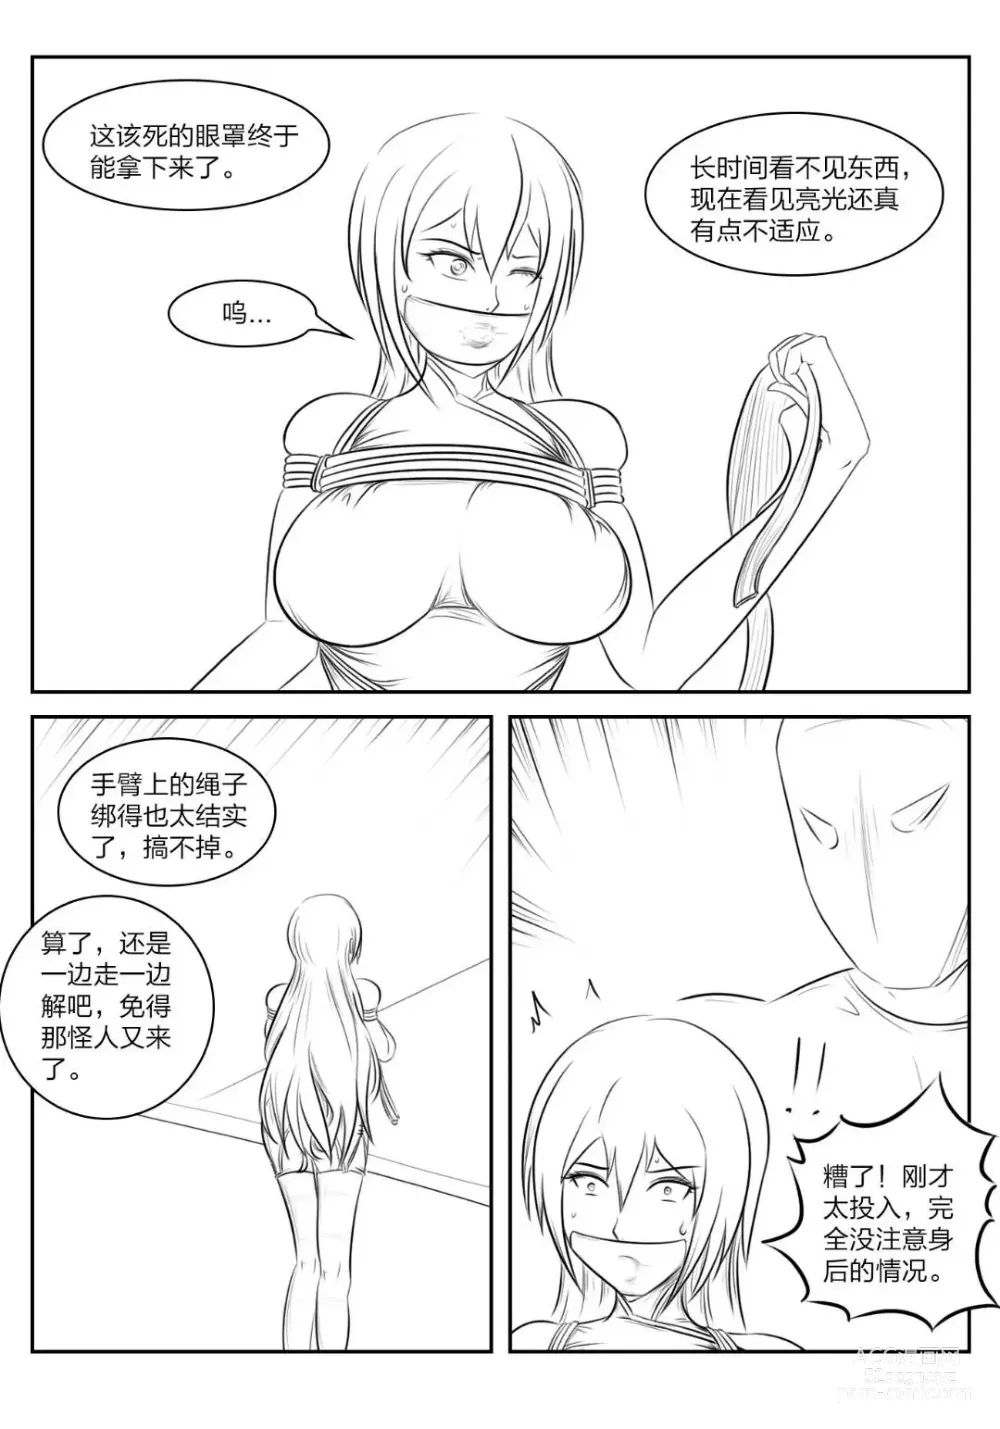 Page 11 of doujinshi 《被困游戏世界》